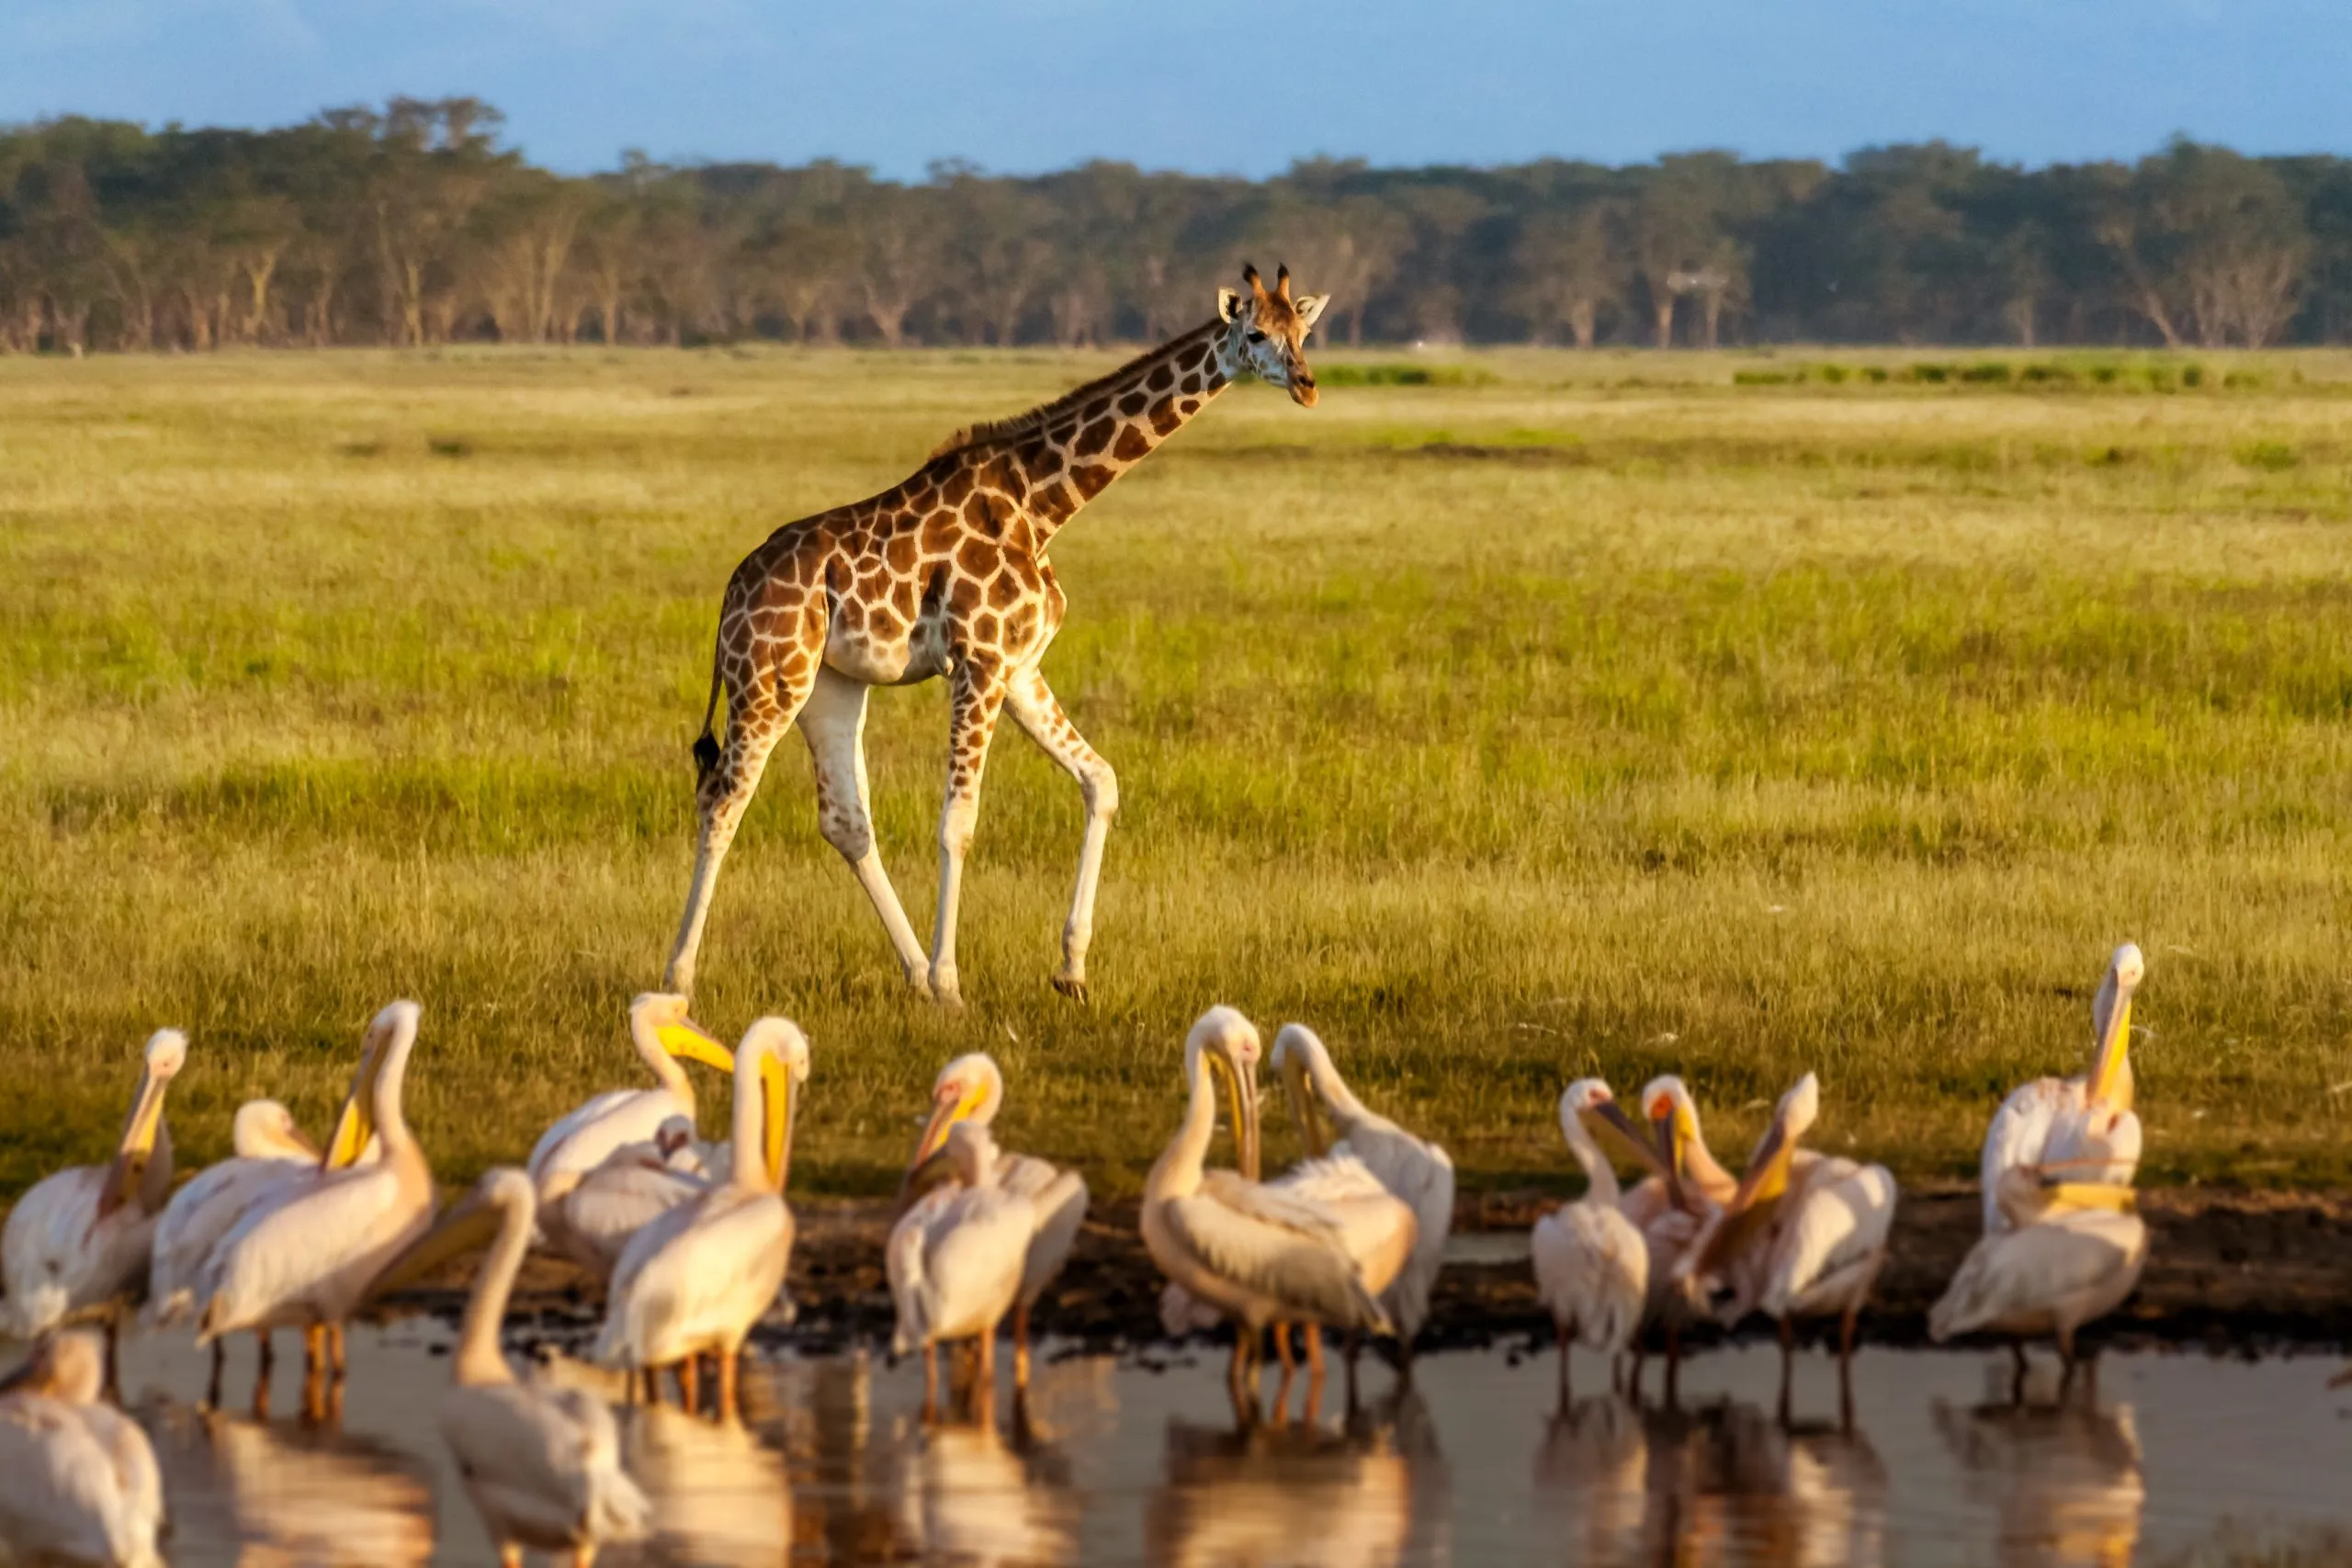 Rothschildin kirahvi (Giraffa camelopardalis) ja pelikaanit.